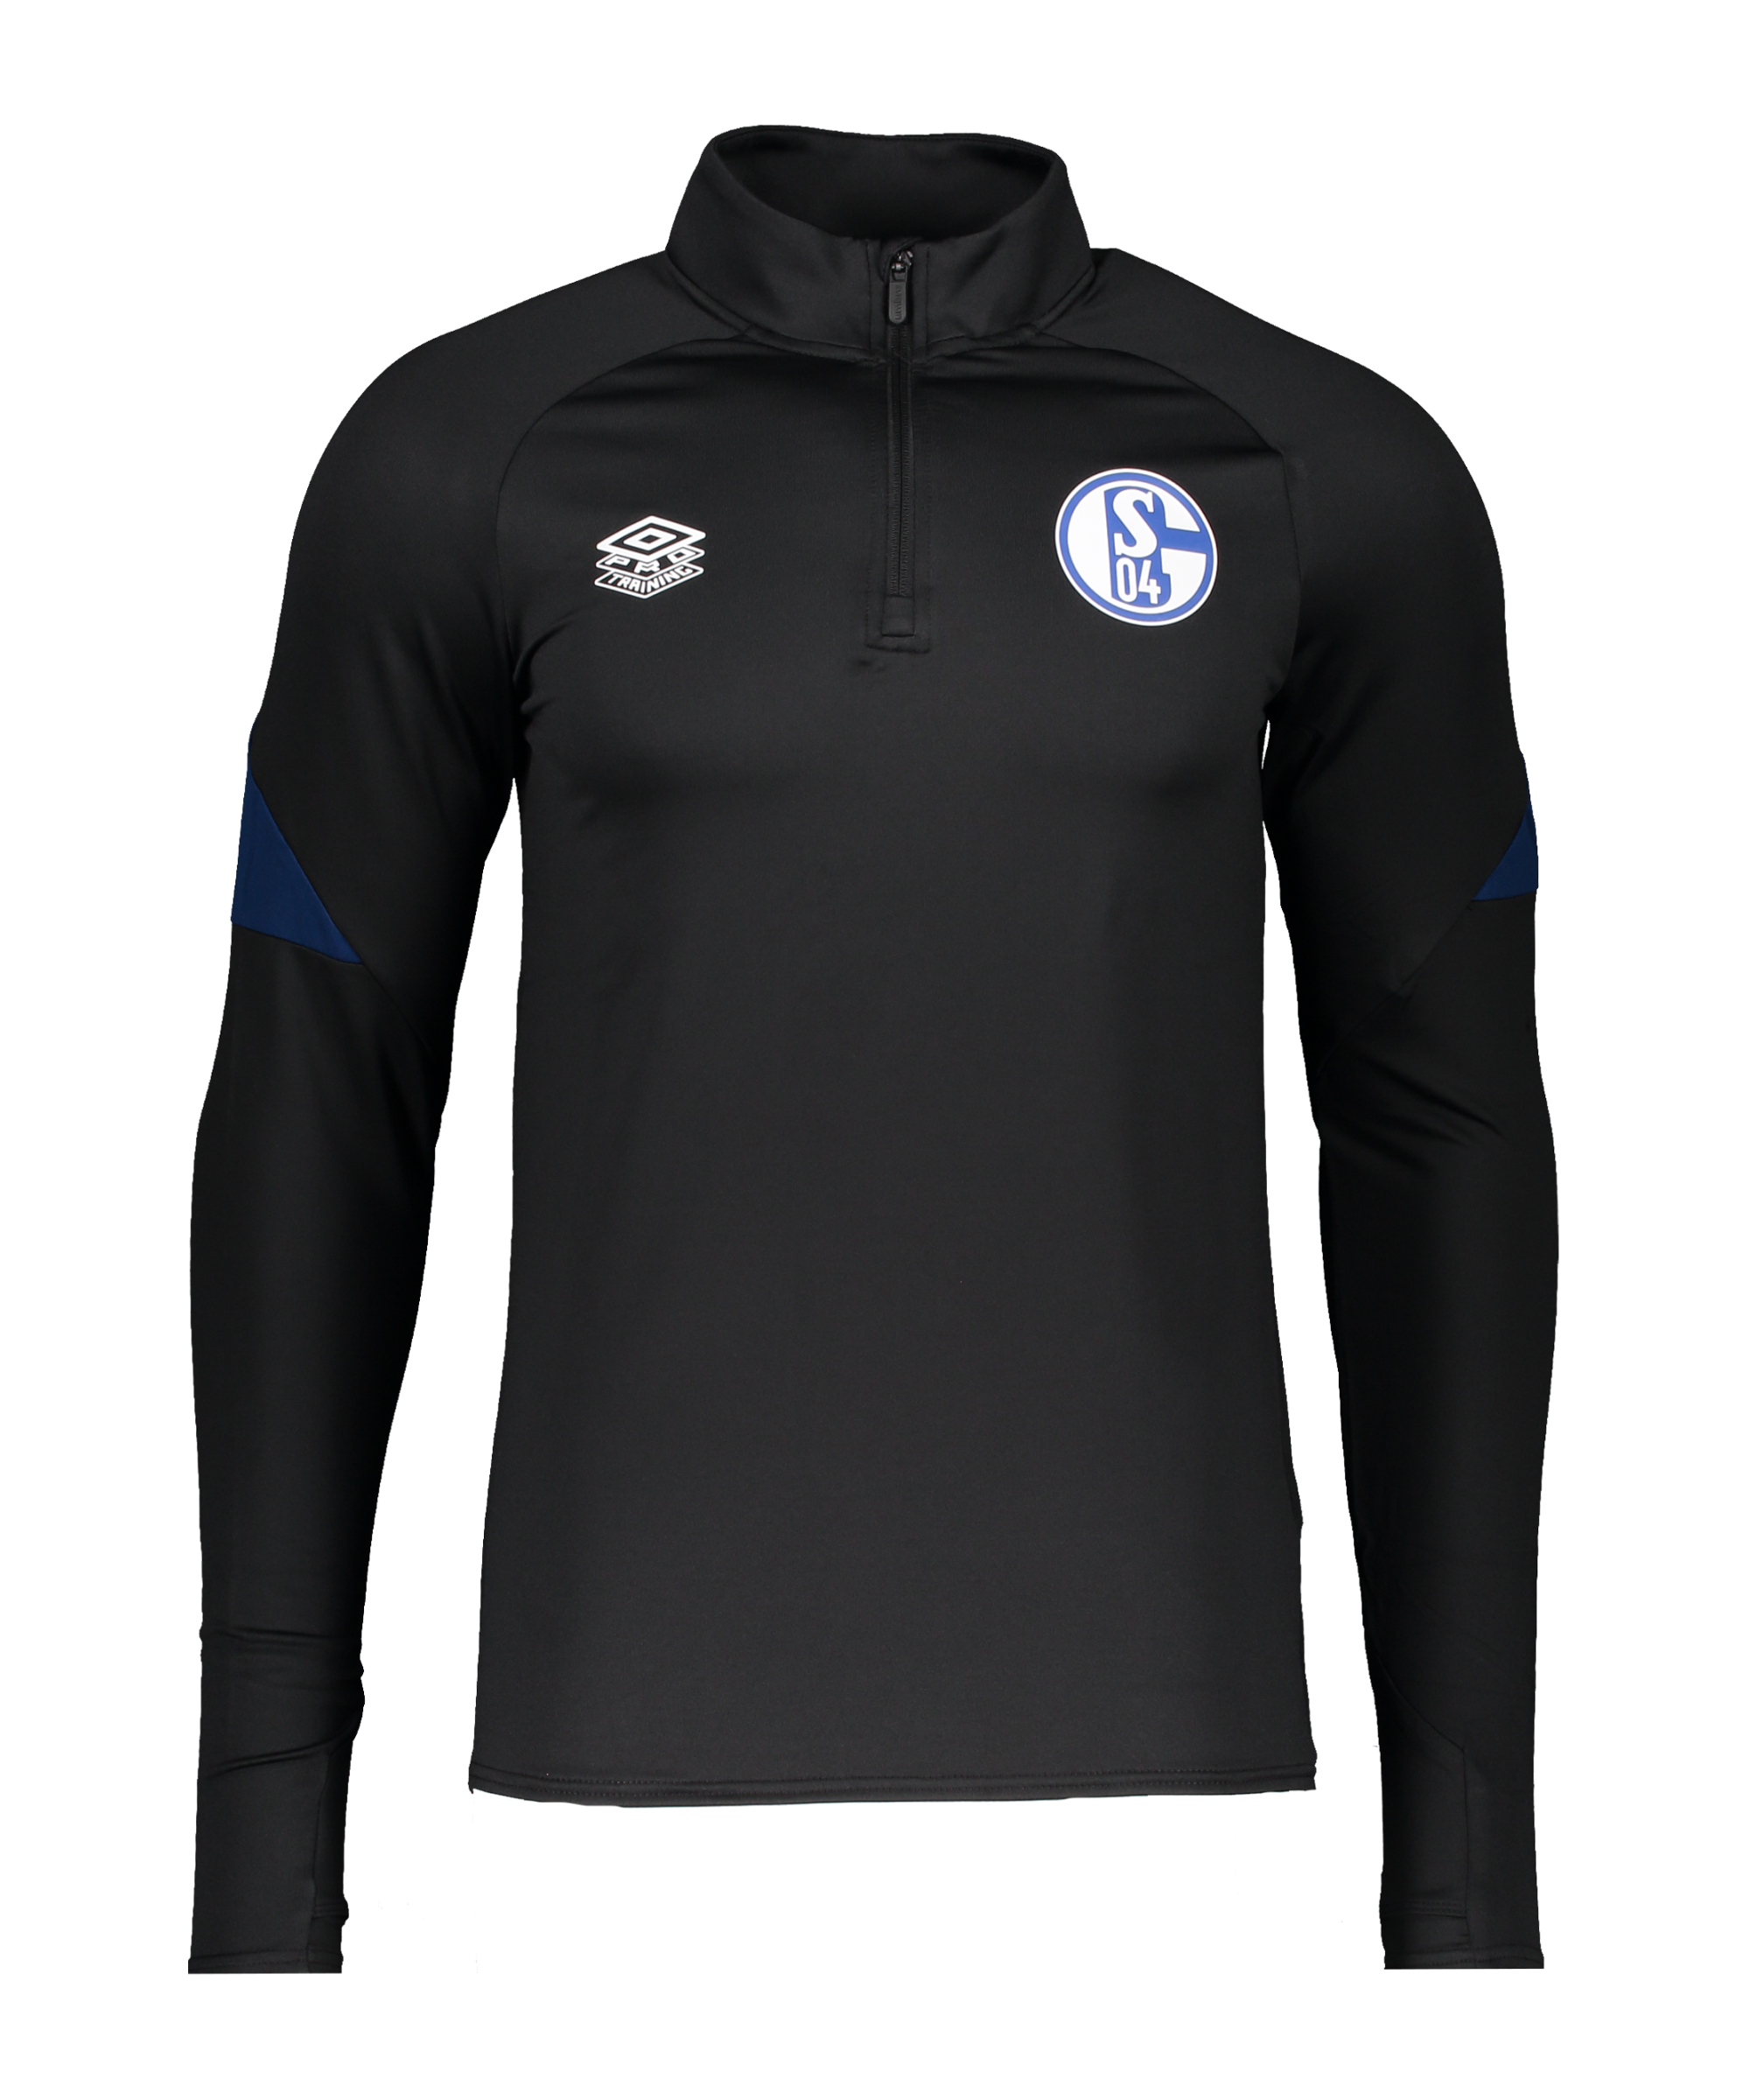 controller katje module Umbro FC Schalke 04 HalfZip Sweatshirt FKN8 - Black